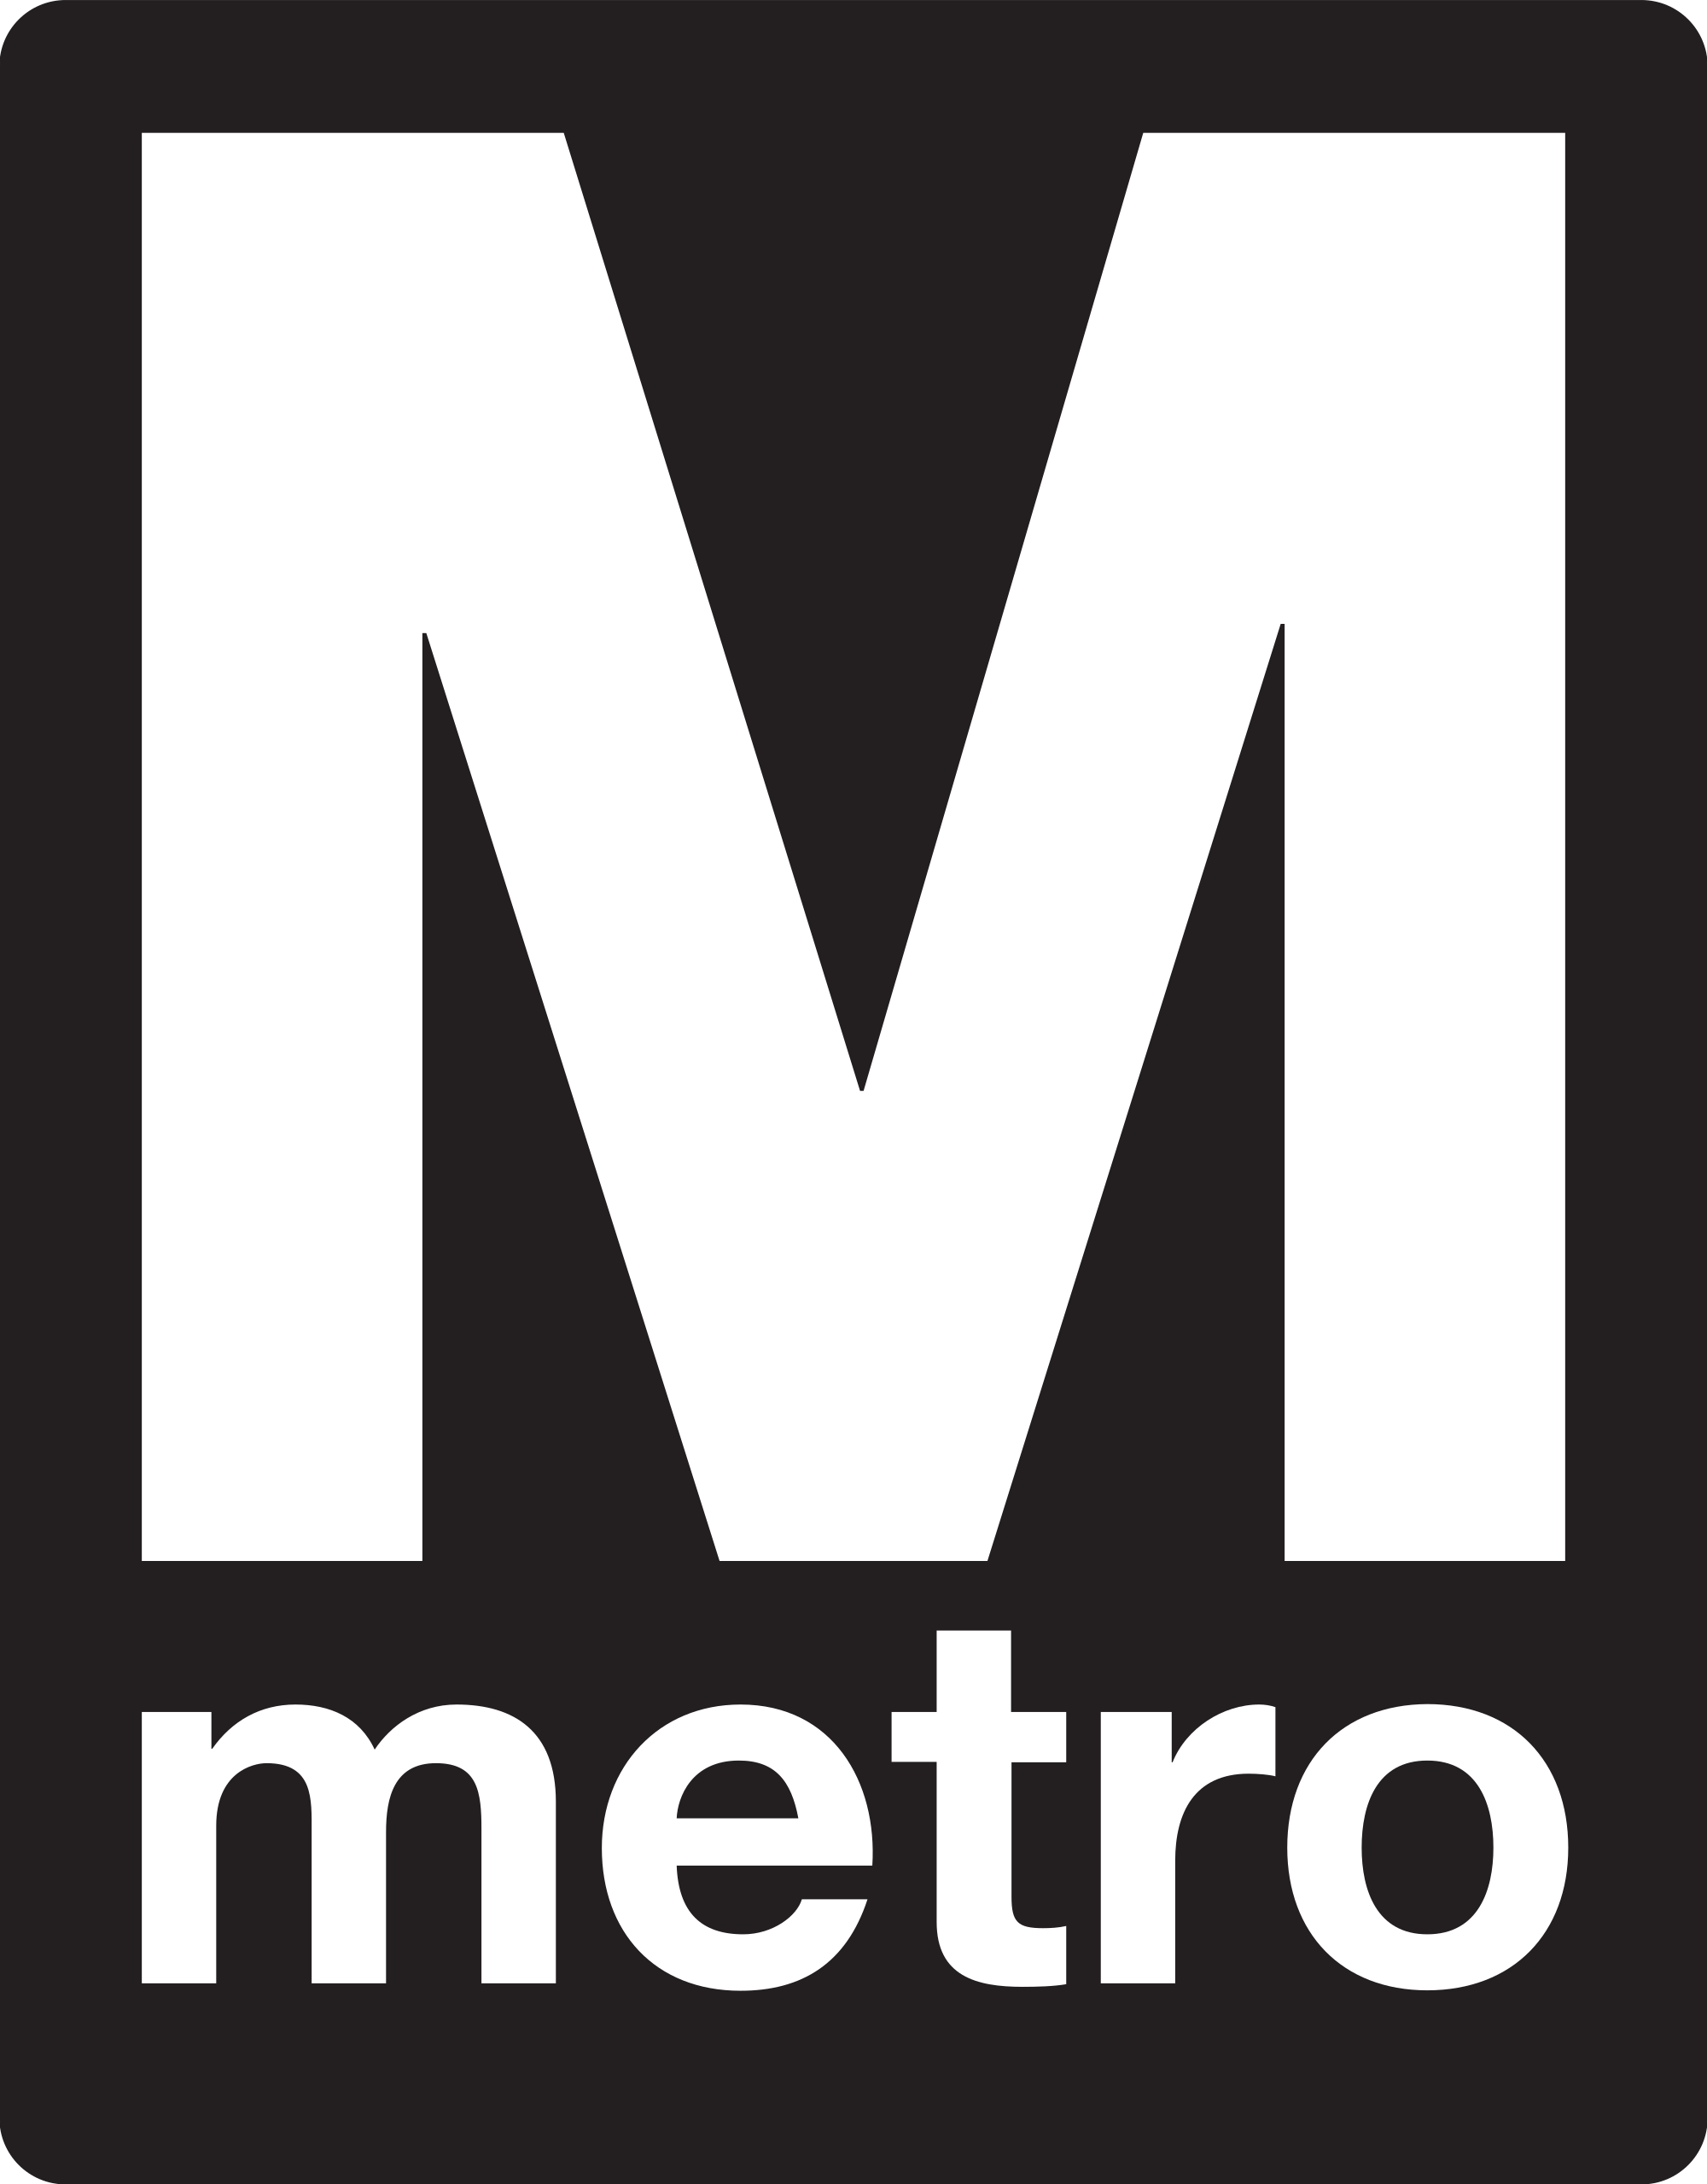 Metro.png